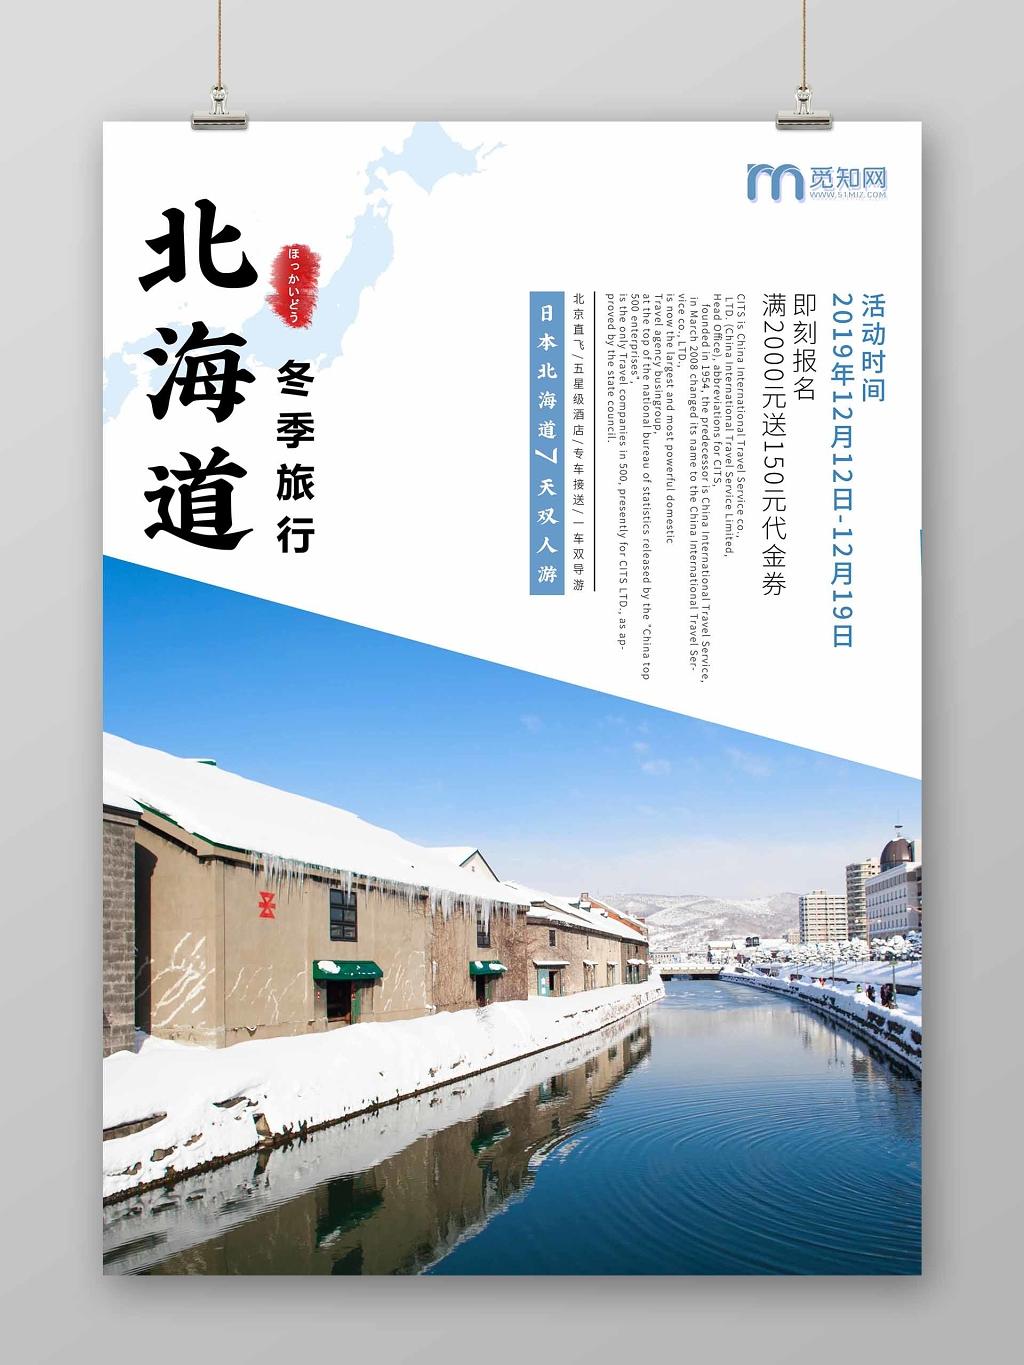 蓝色唯美简洁冬天日本北海道冬季旅游海报设计